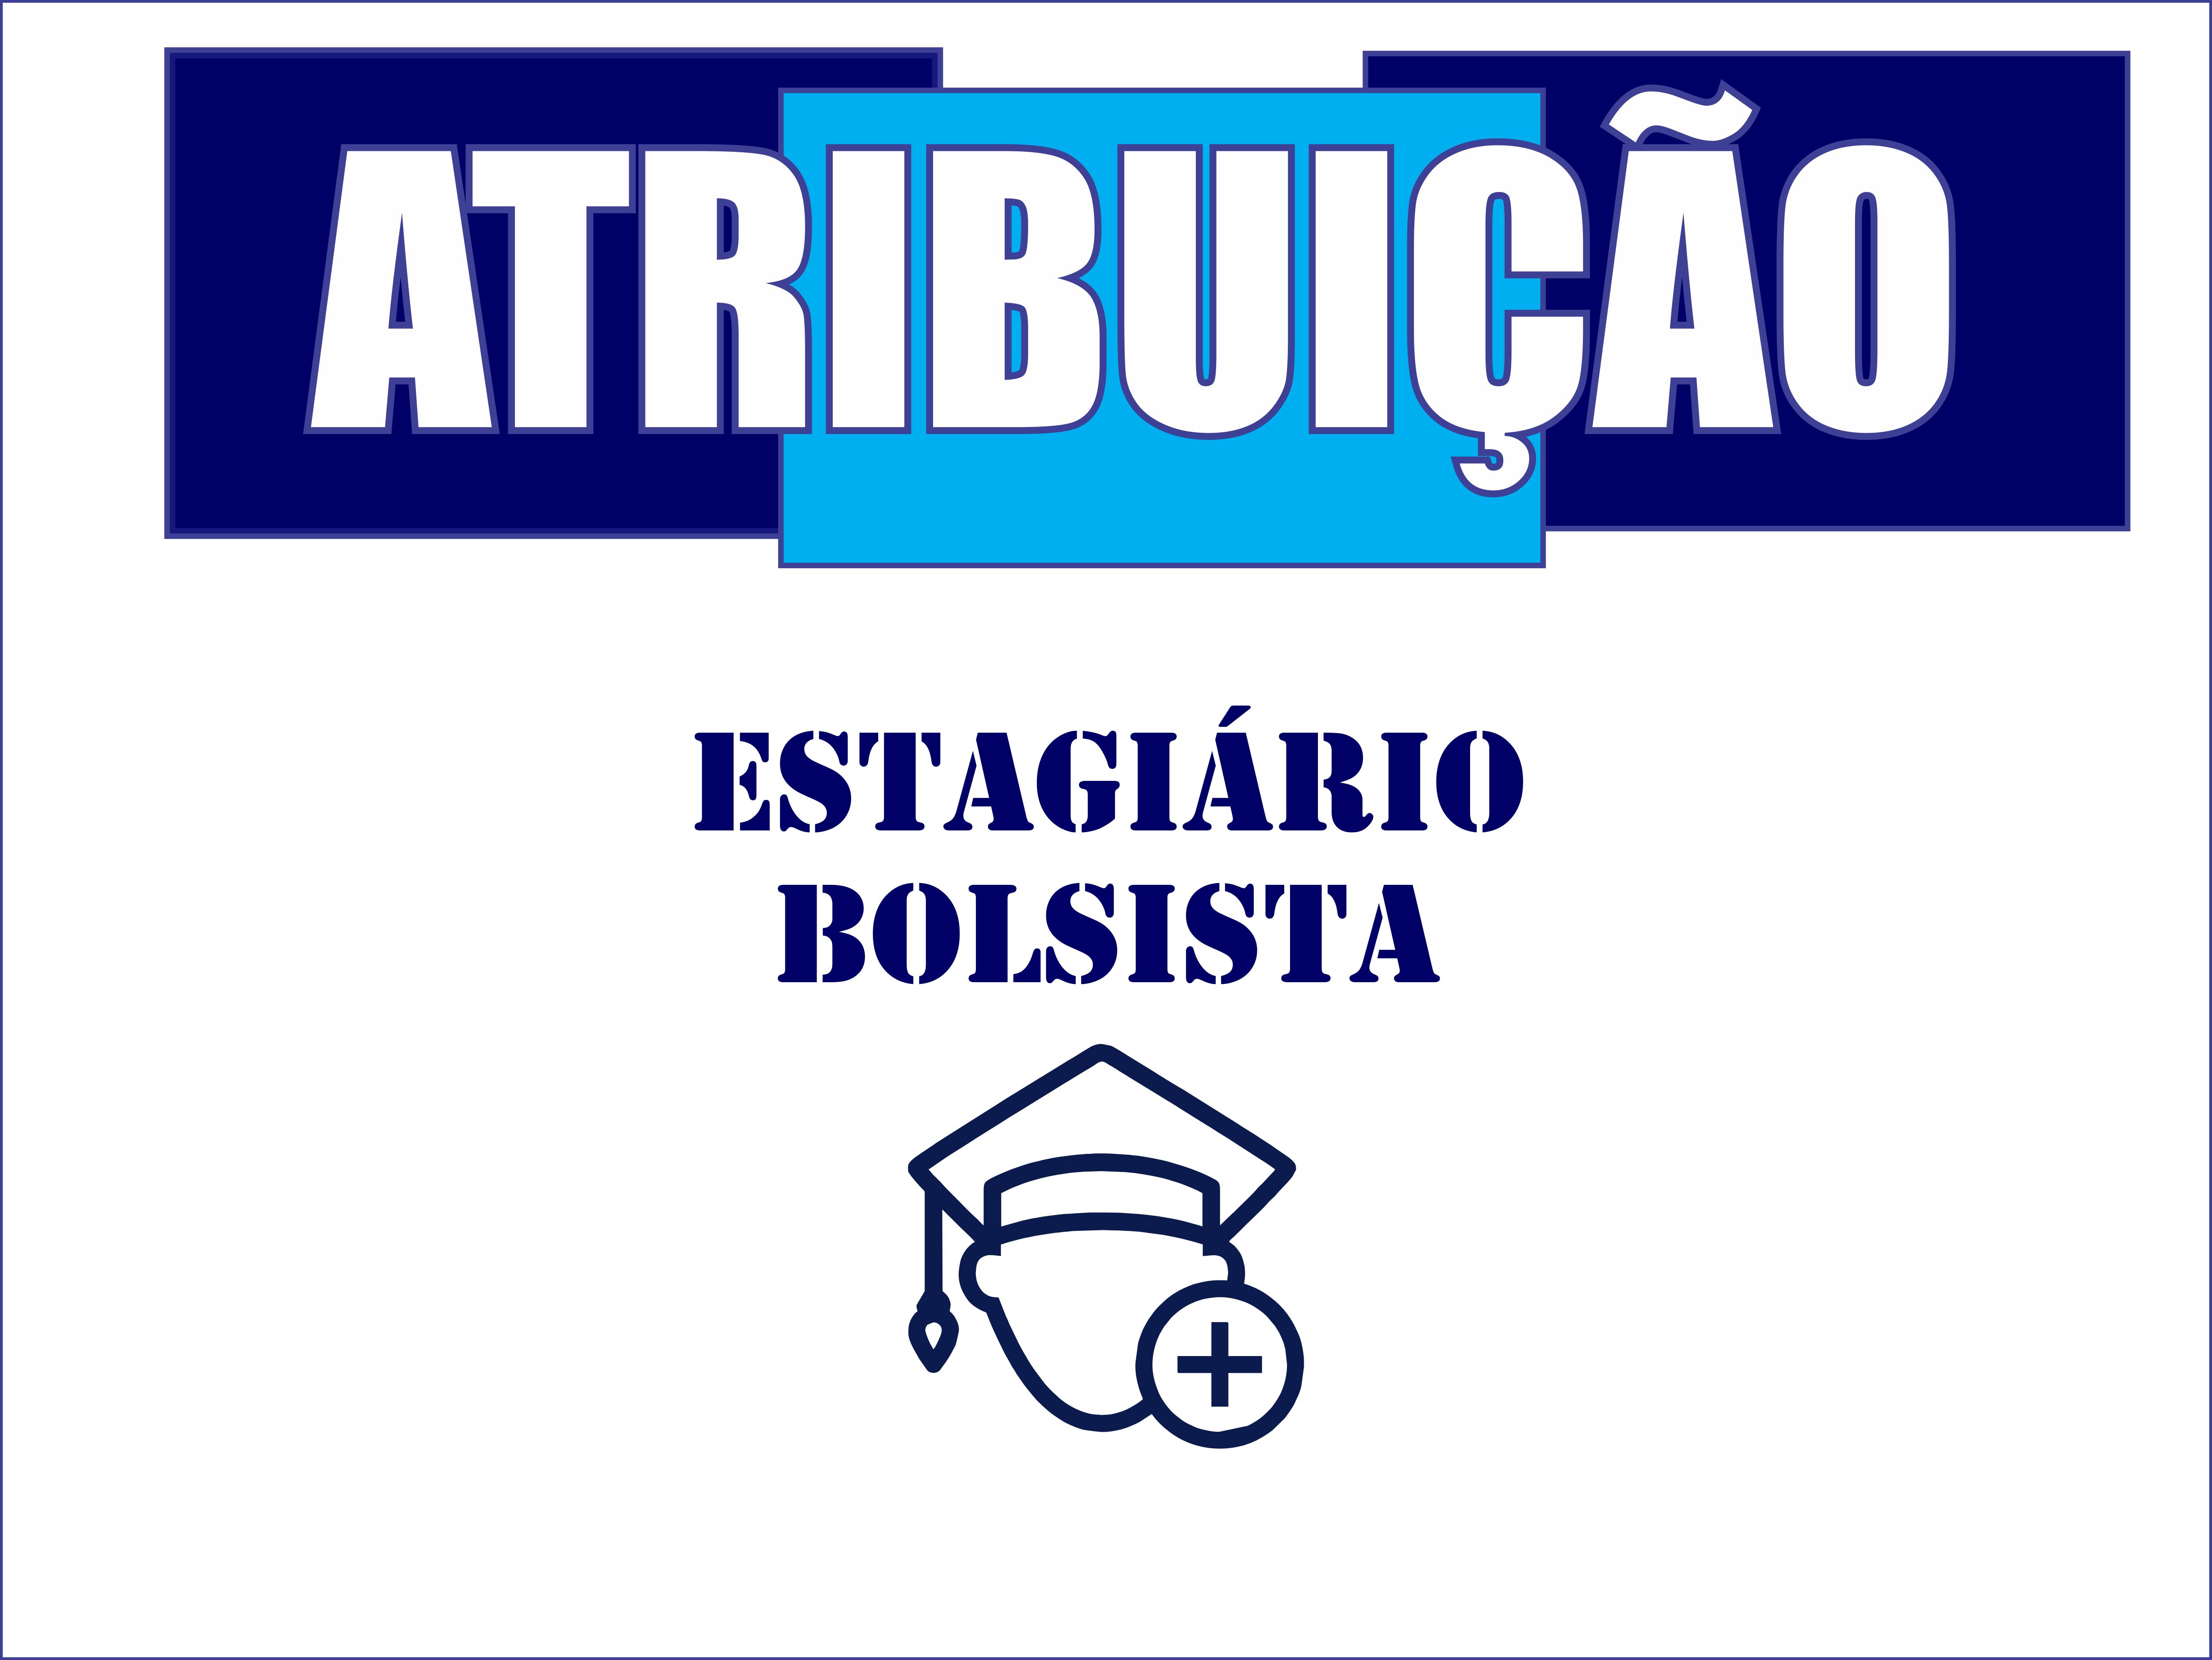 7 SESSO DE ATRIBUIO BOLSISTA ESTAGIRIO